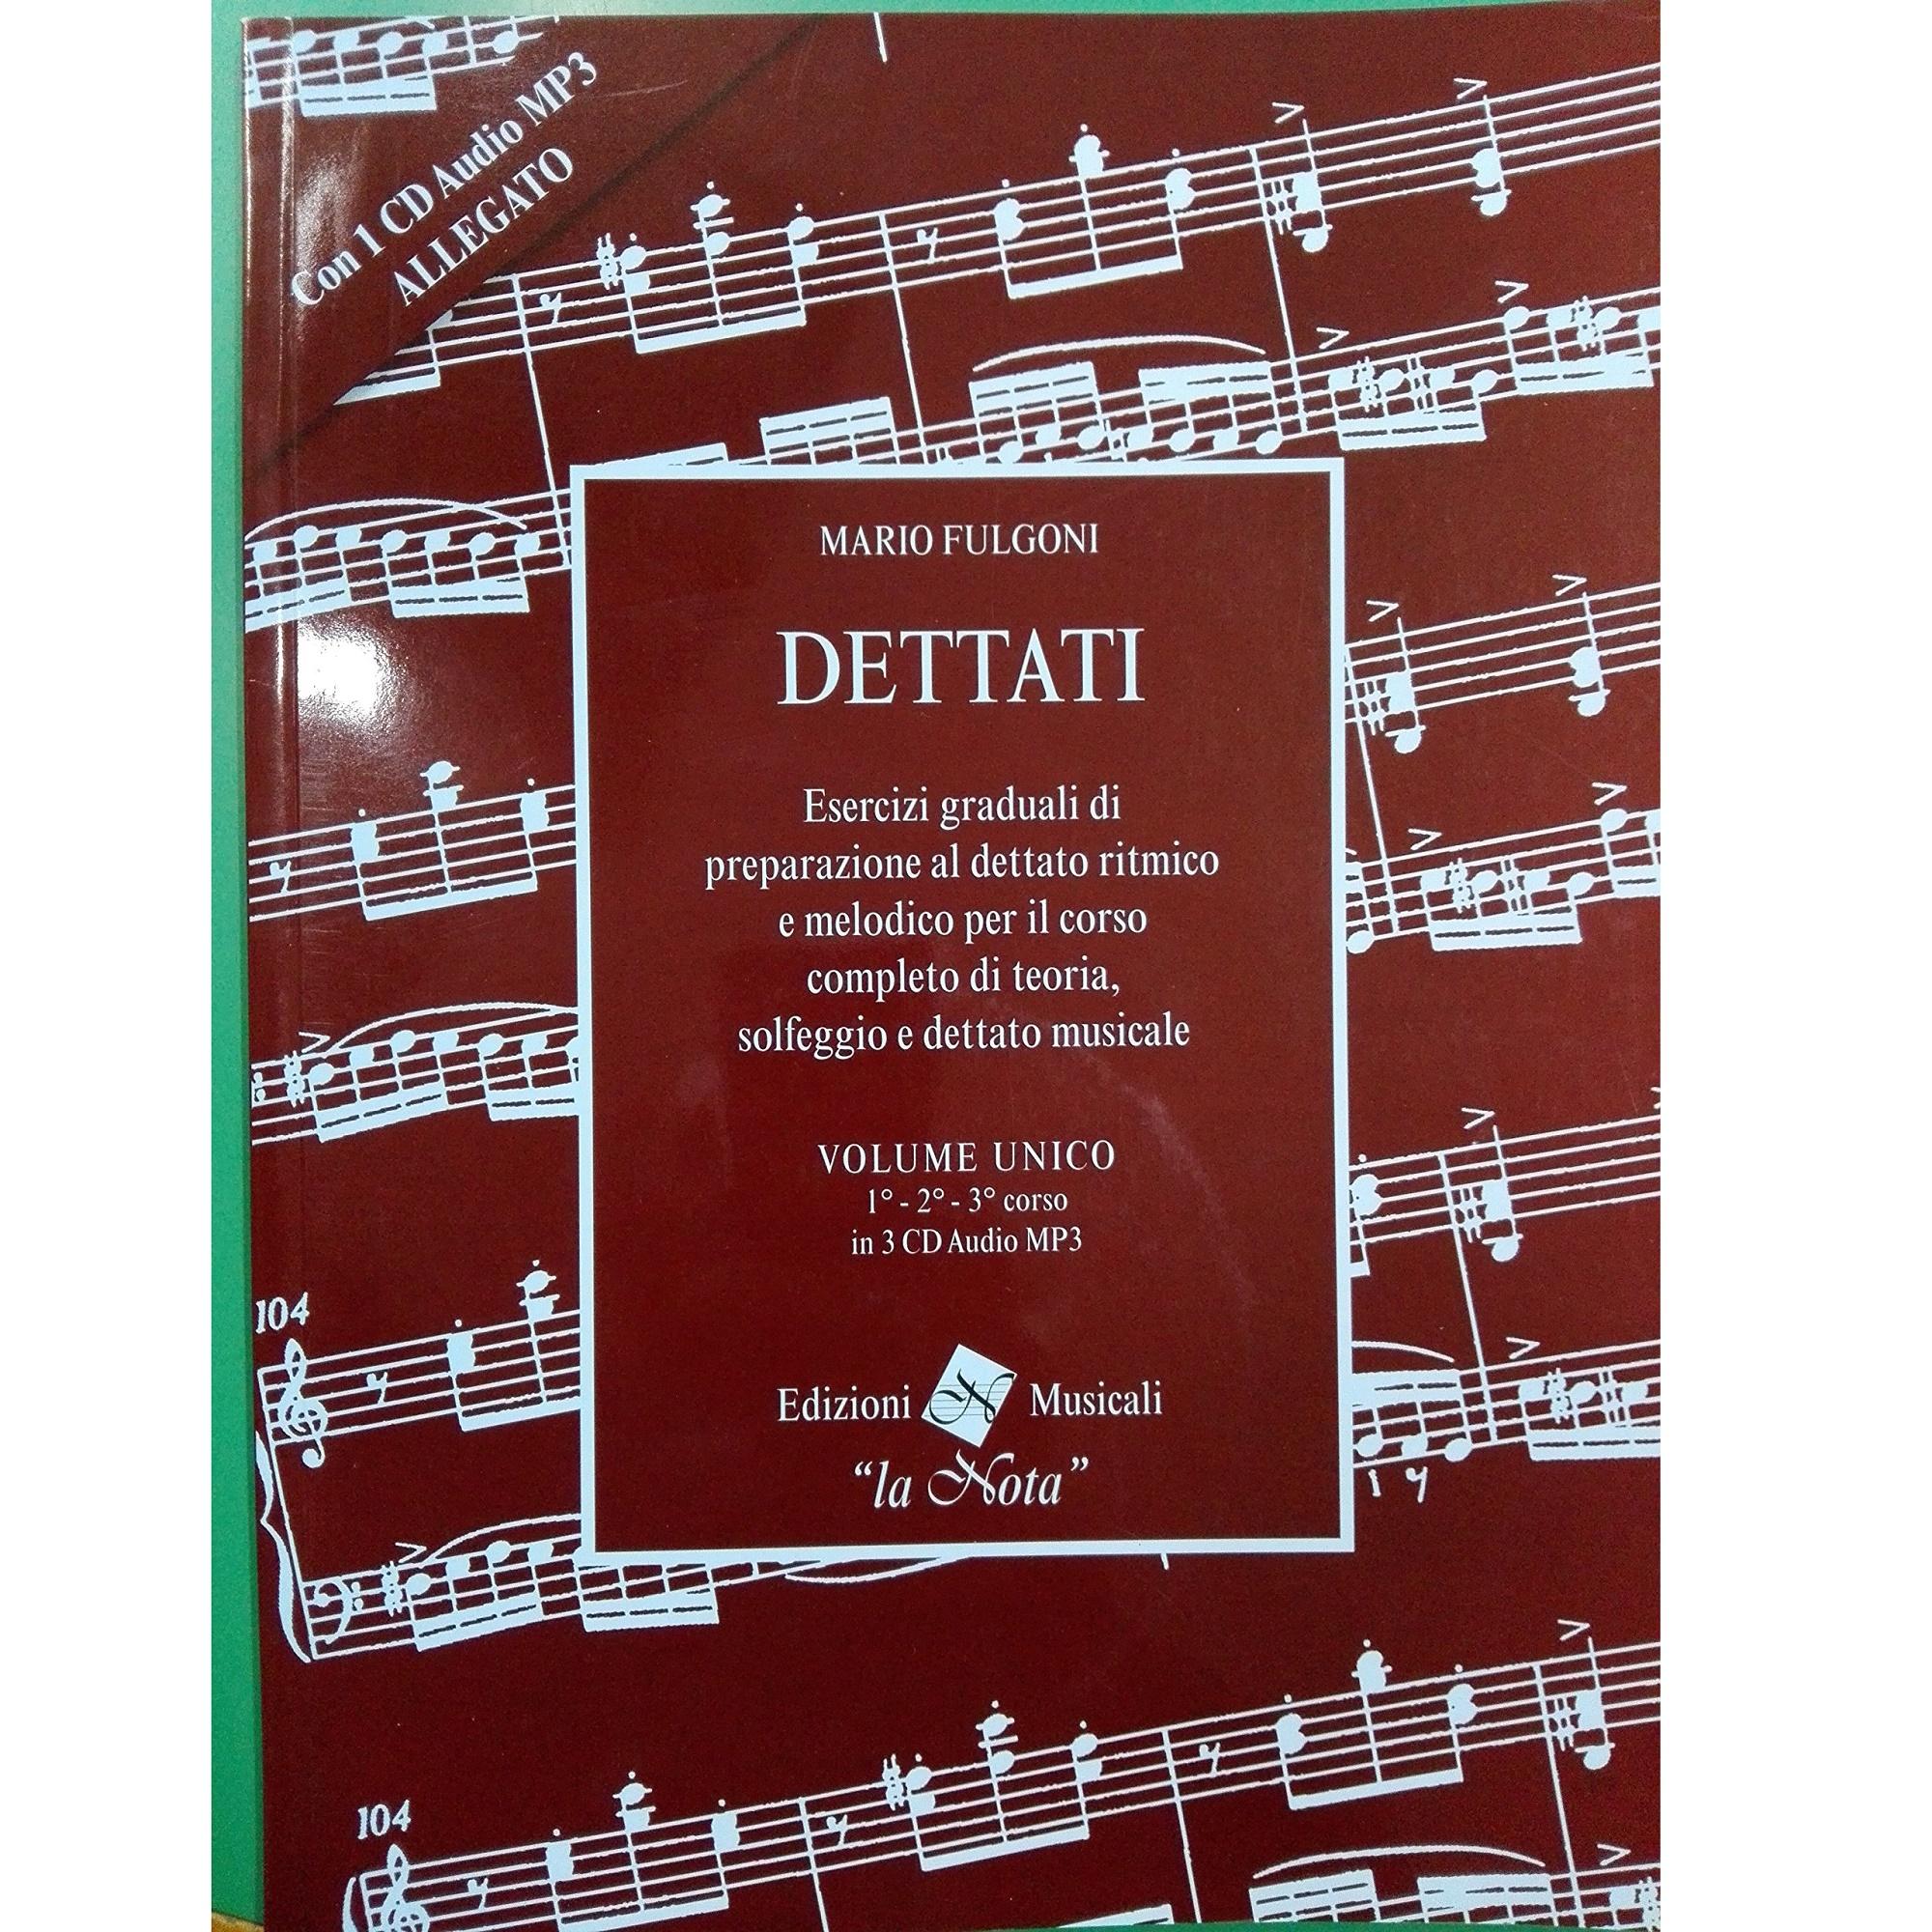 Fulgoni Dettati Volume unico 1 2 3 Corso - Edizioni Musicali 